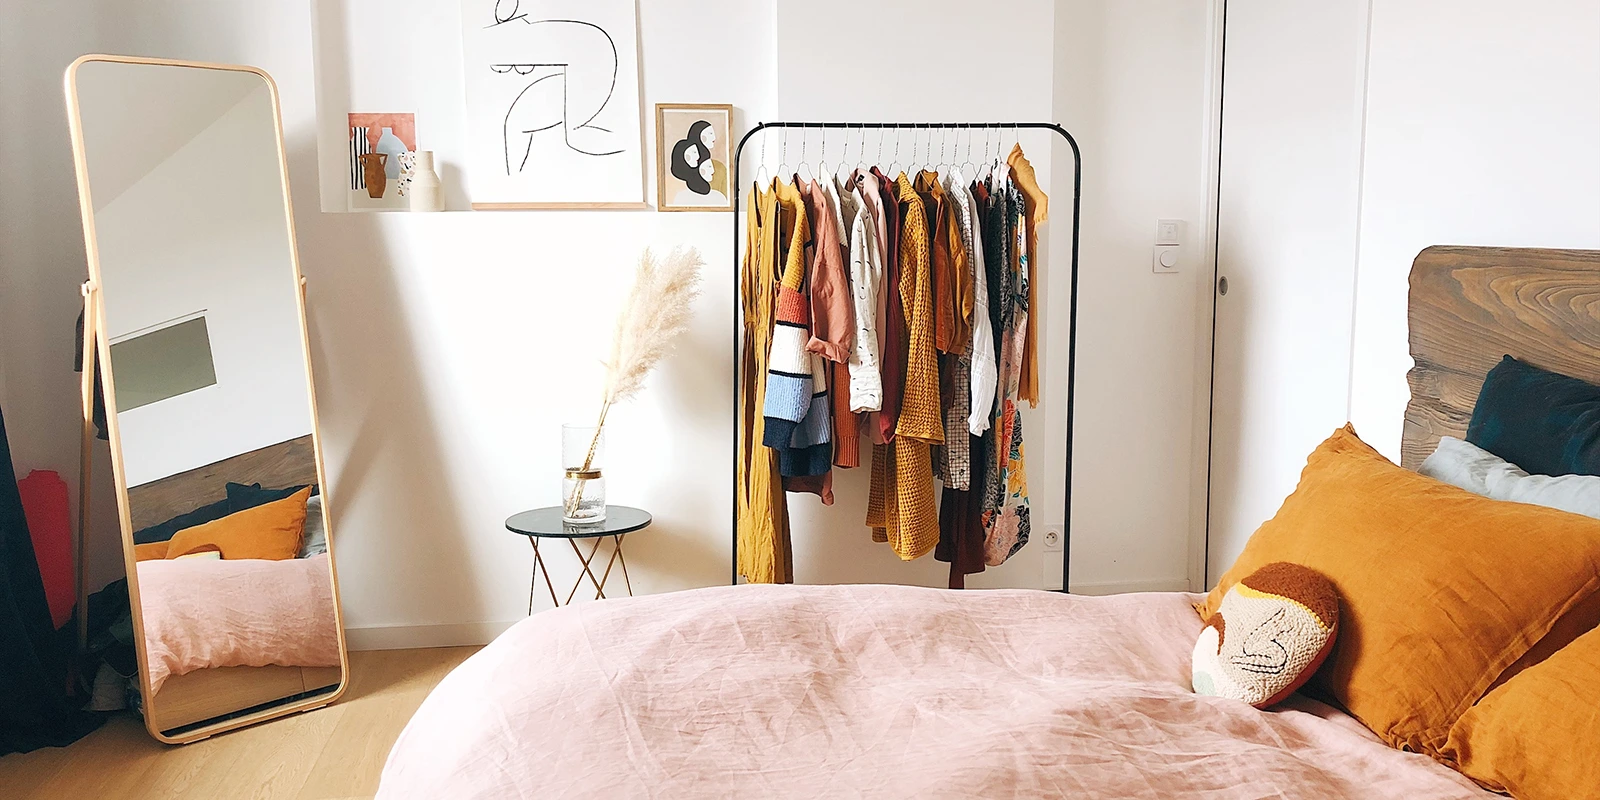 Petite chambre : 15 idées pratiques pour ranger les vêtements